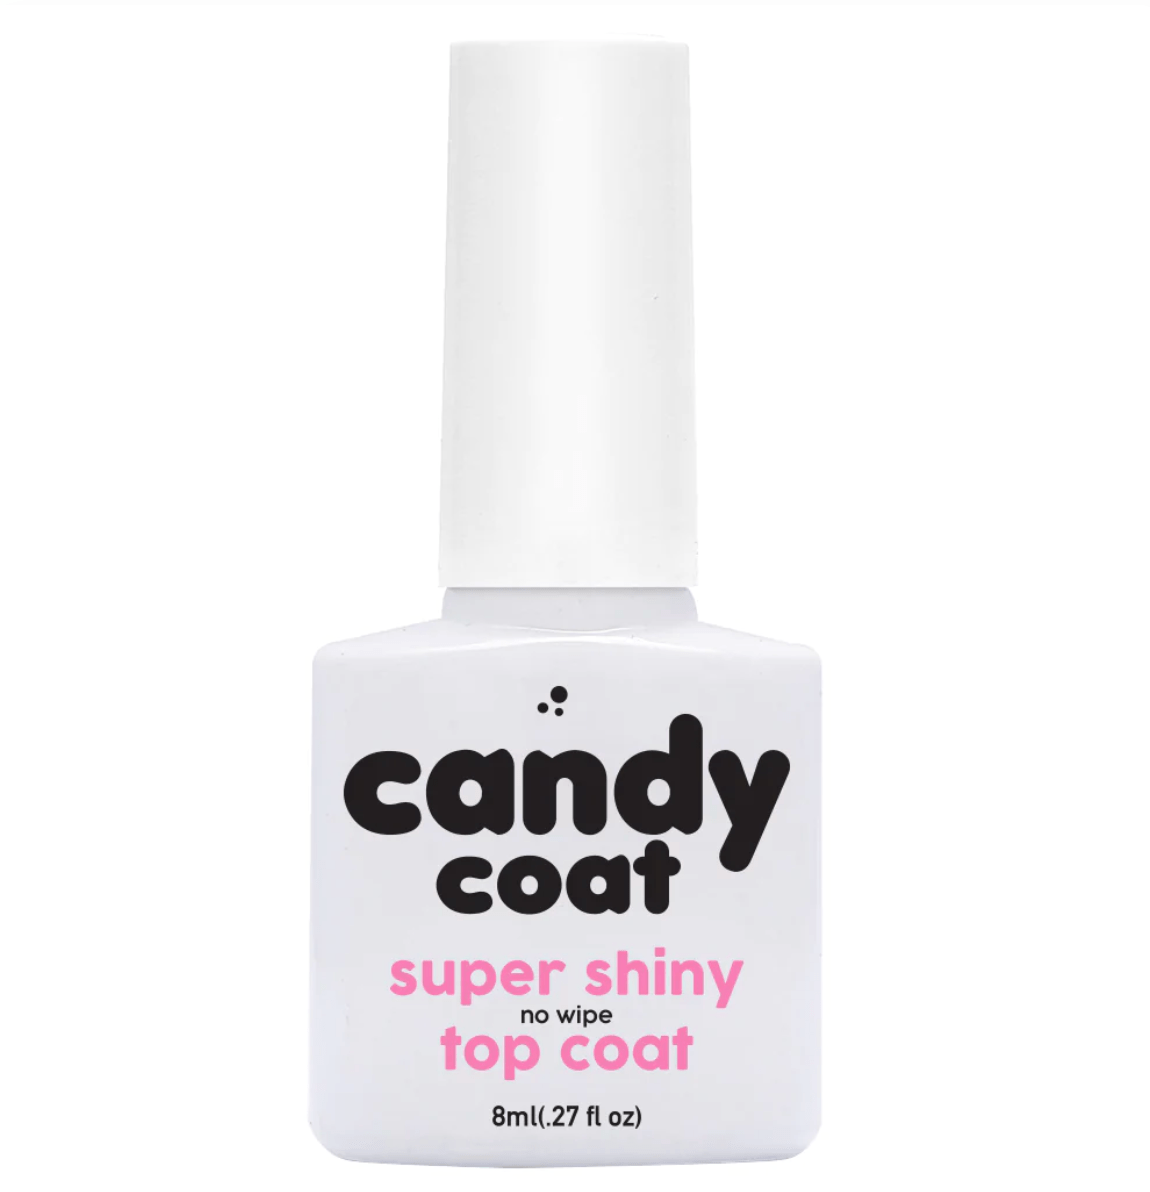 Candy Coat Super Shiny No Wipe Top Coat